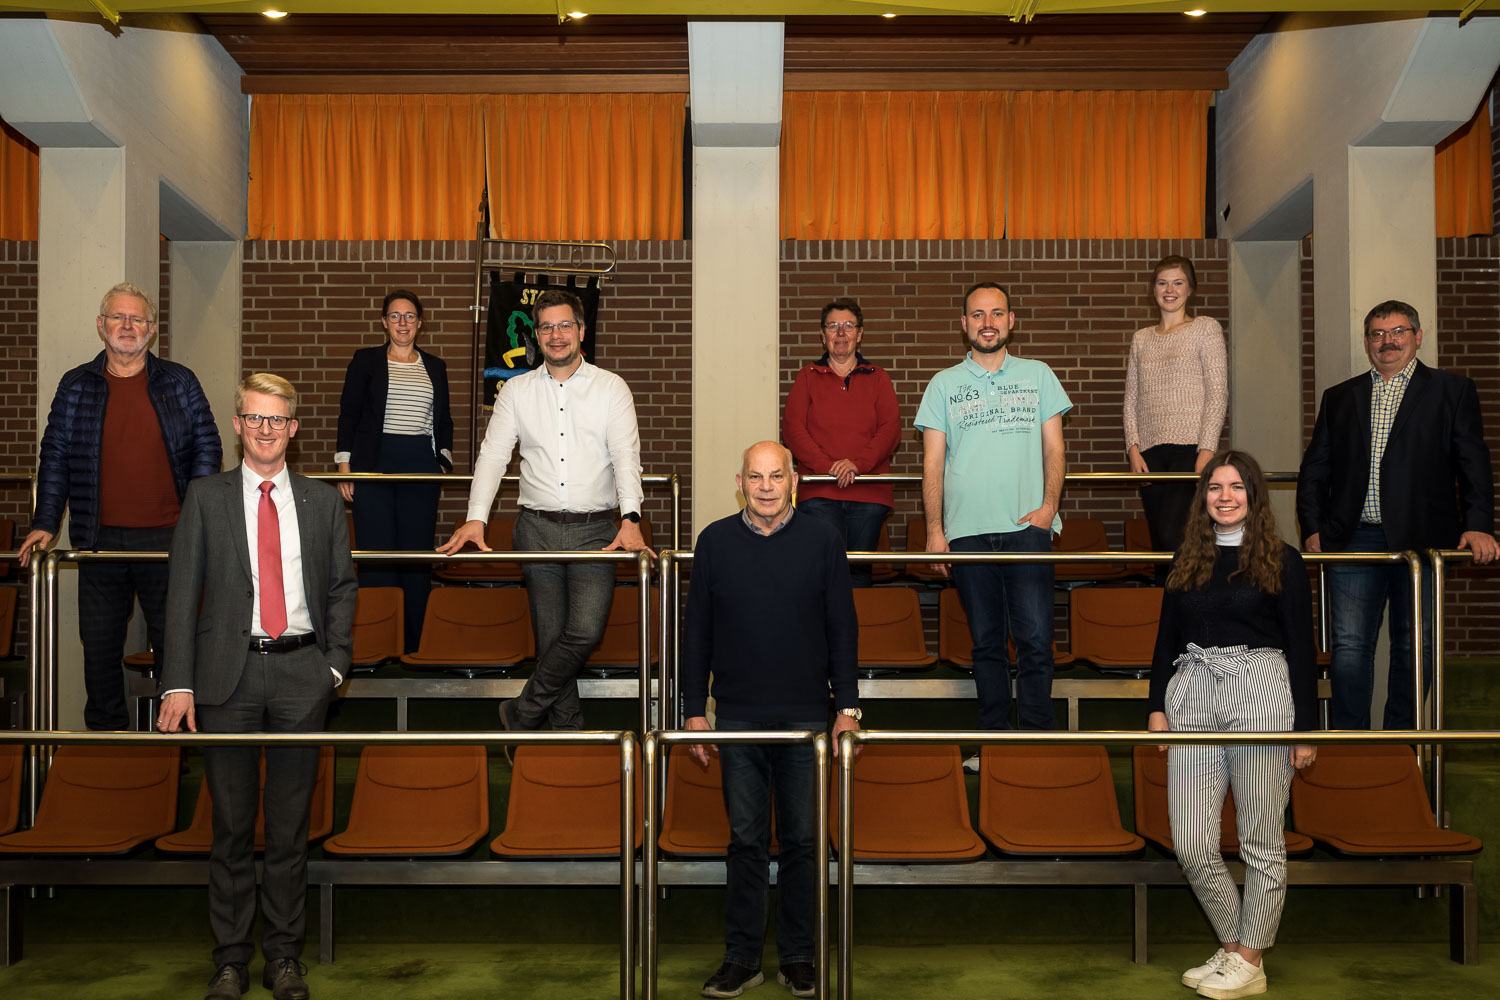 Auf dem Bild sind die 7 Ratsmitglieder SPD Fraktion in Salzkotten mit den 3 Sachkundigen Büger*innen auf der Tribüne im Ratssaal abgebildet.